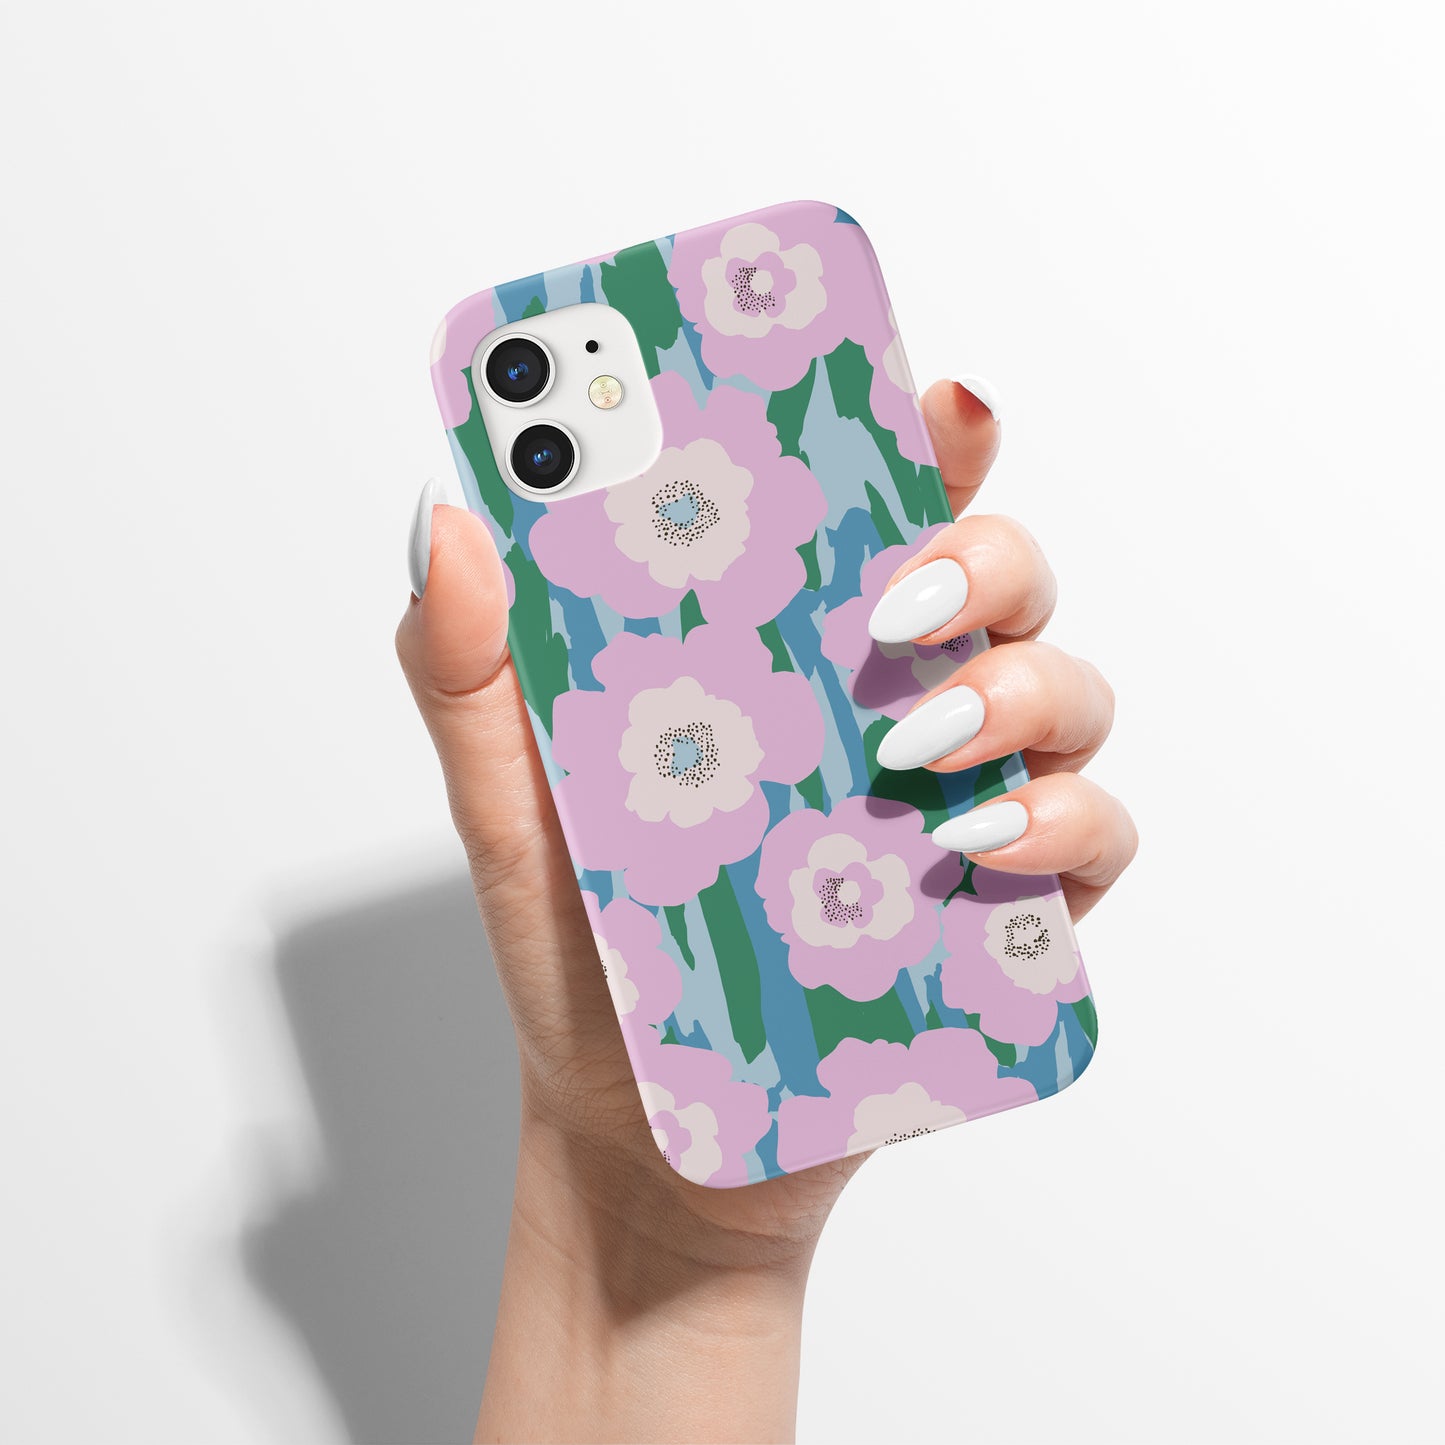 Pastel Retro Flowers iPhone Case